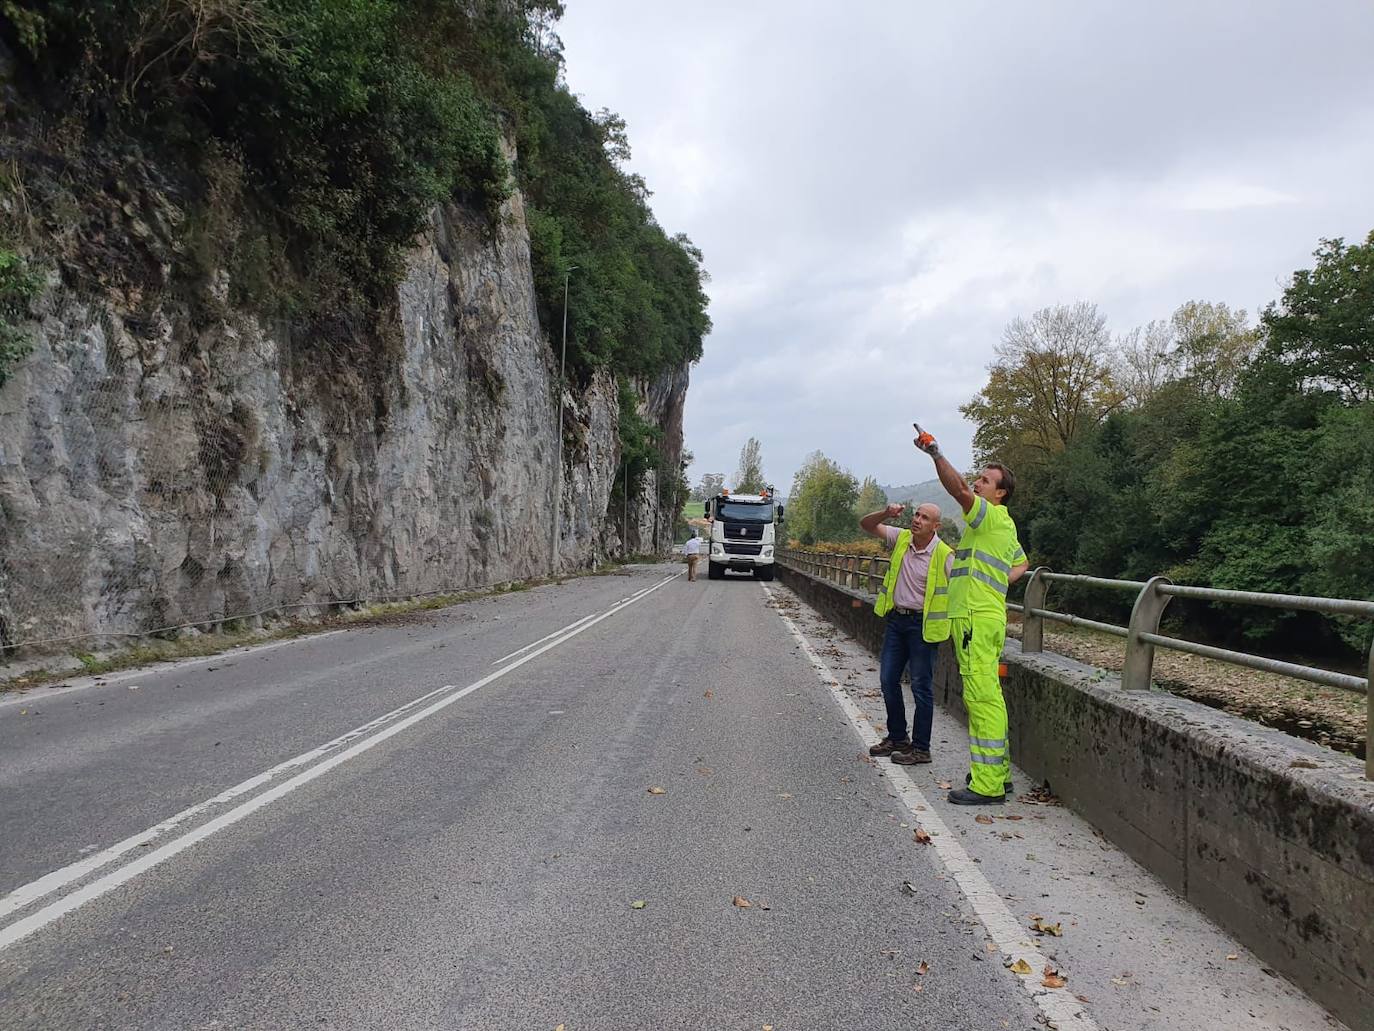 Técnicos del Mitma evalúan el riesgo de la carretera N-634 antes de decidir reabrirla